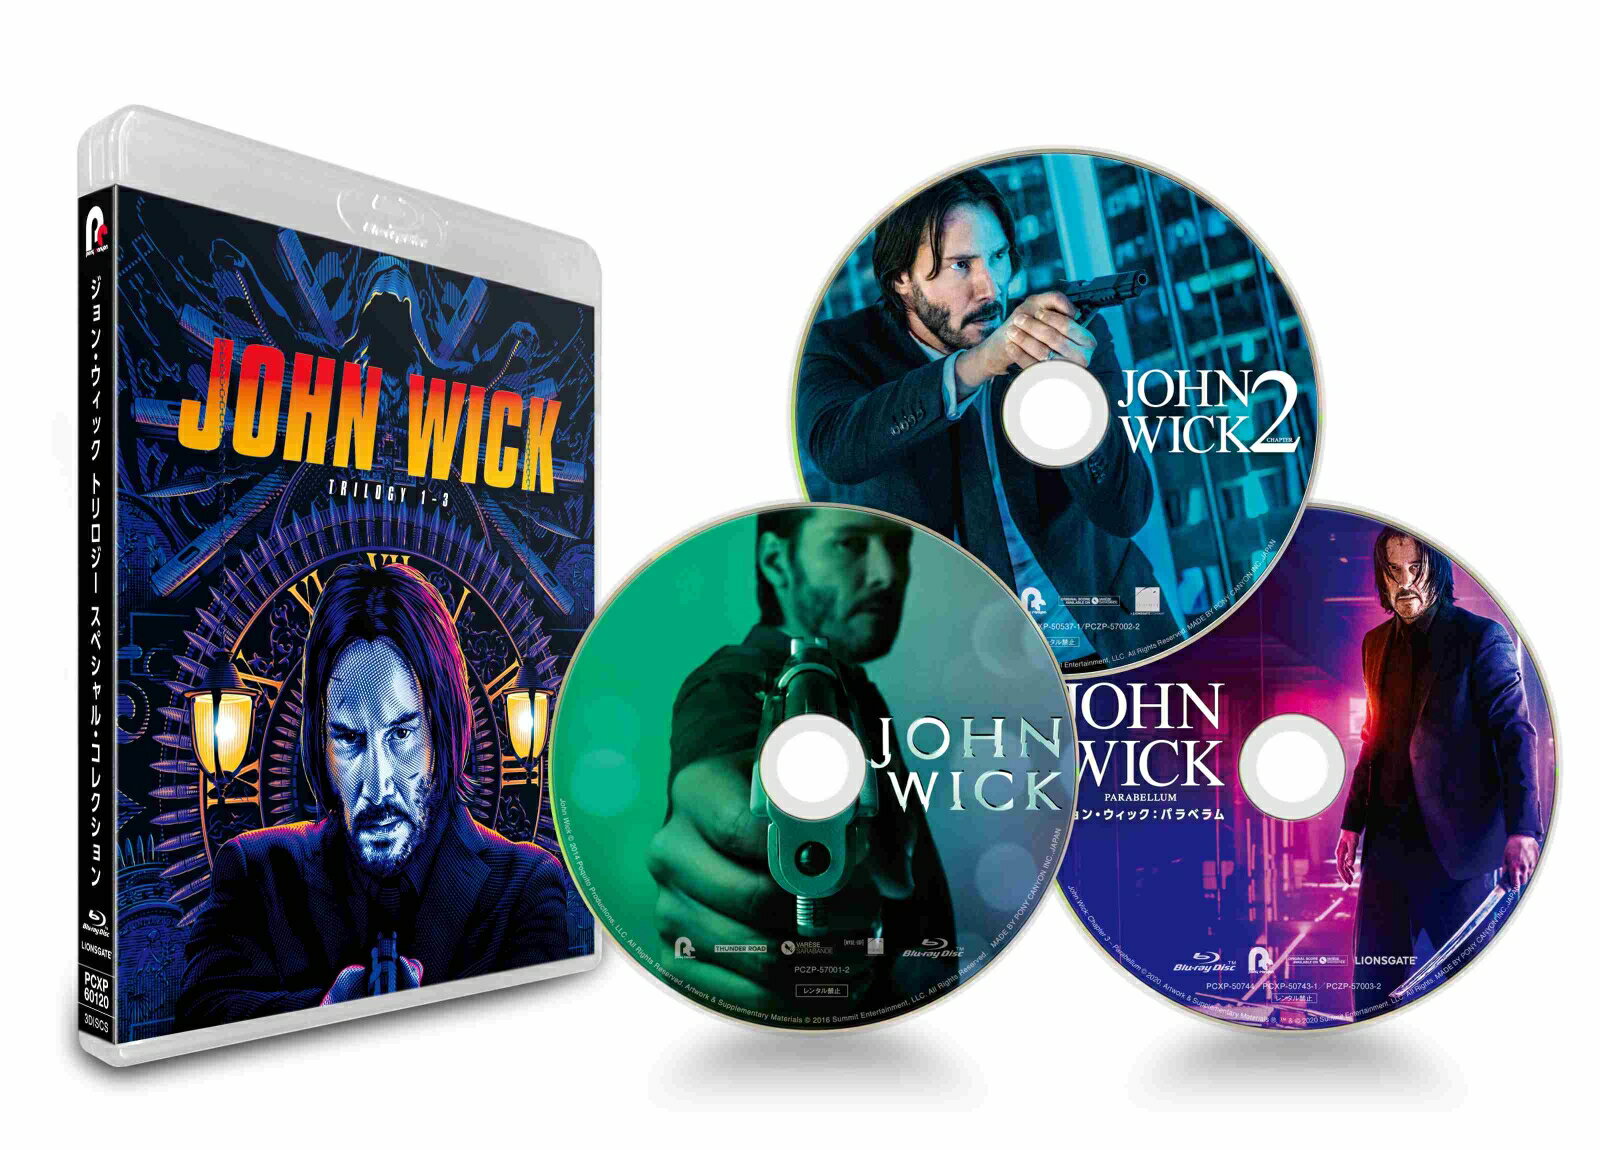 ジョン ウィック トリロジー スペシャル コレクション(初回生産限定)【Blu-ray】 キアヌ リーブス